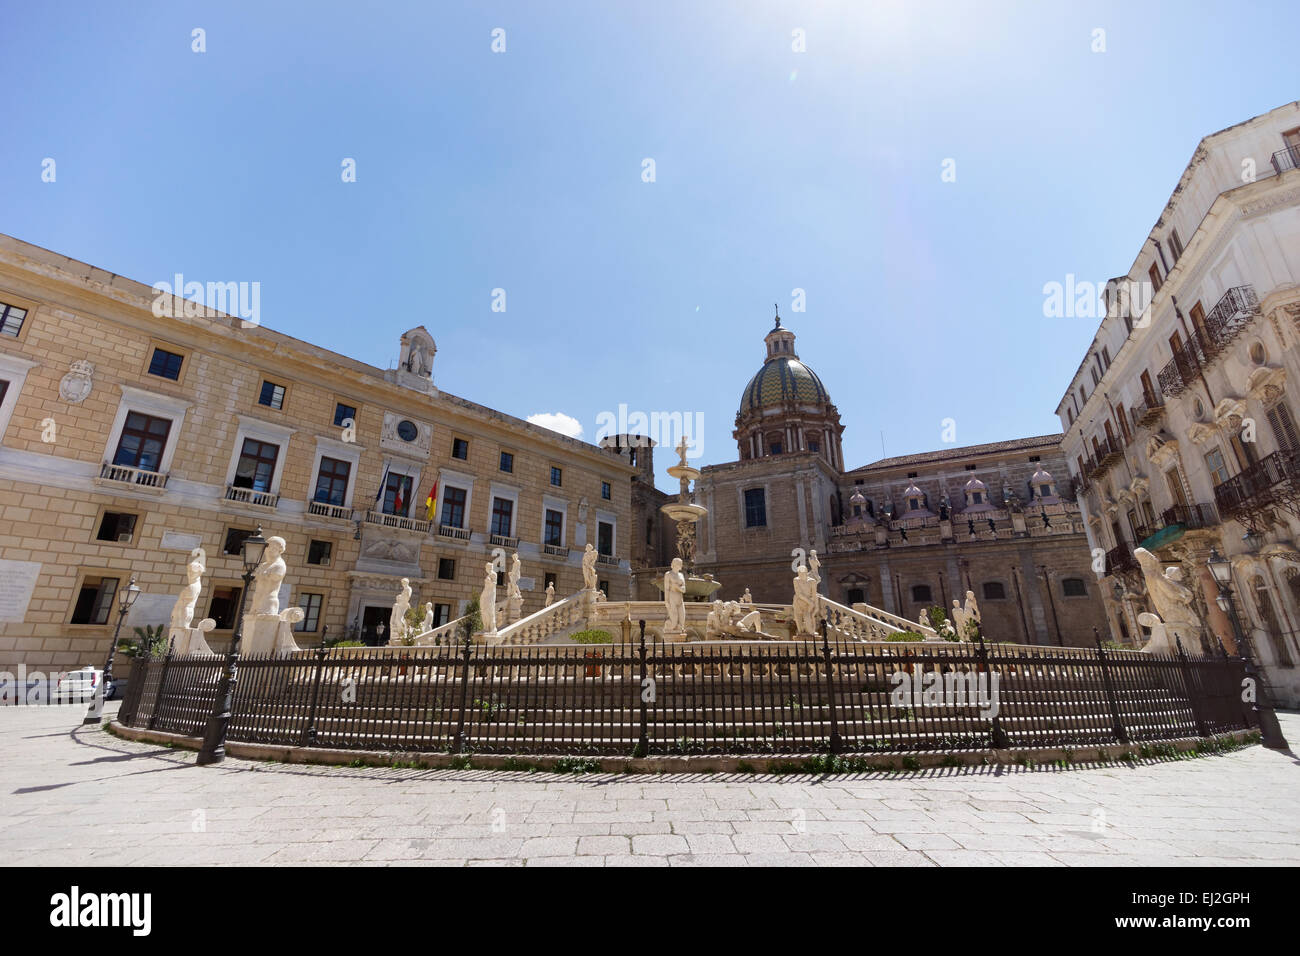 The Fontana Pretoria in the heart of Palermo, Sicily. Stock Photo